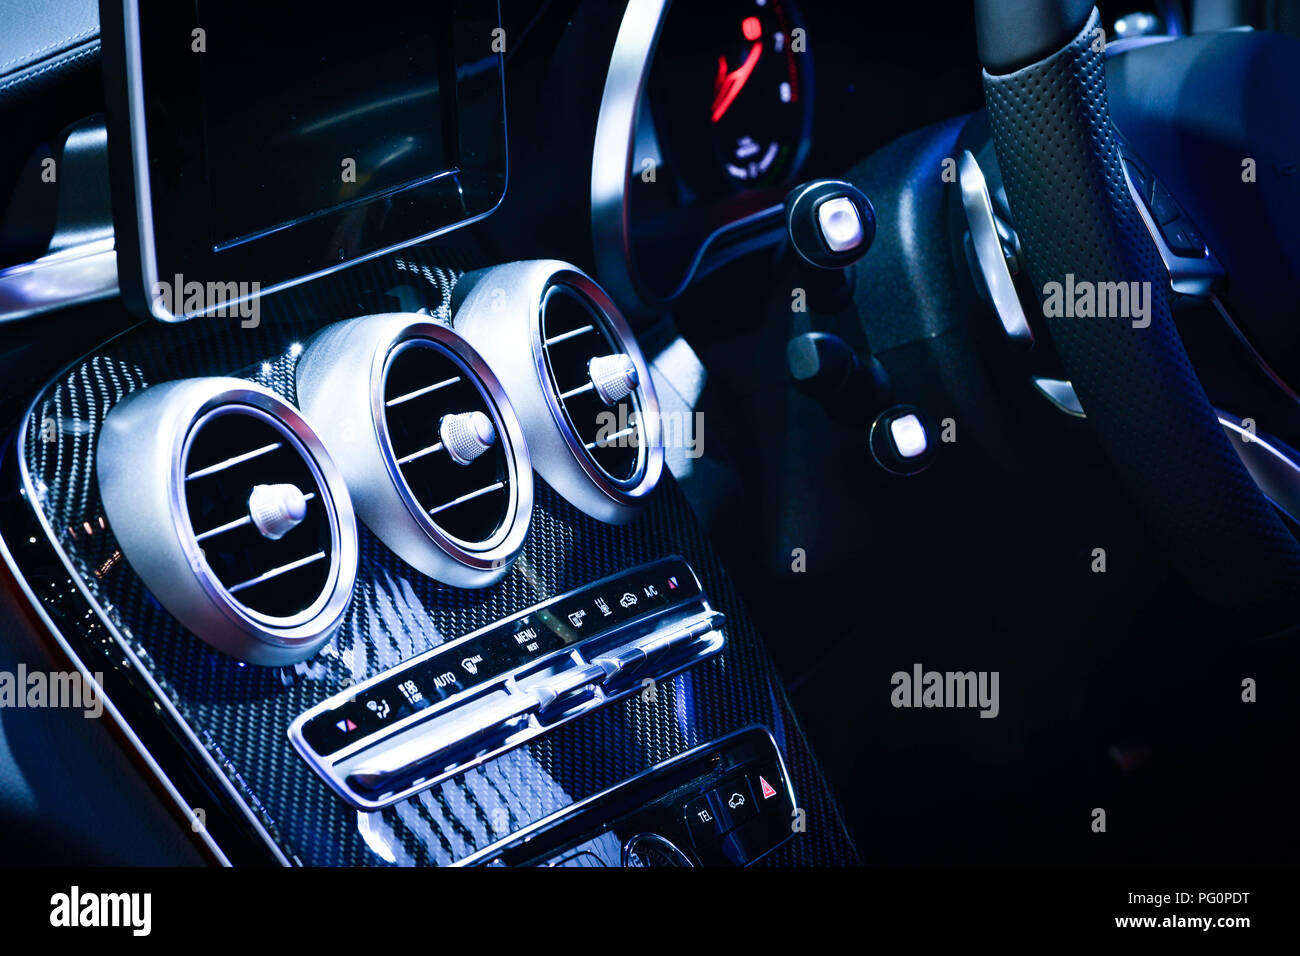 Modernes auto Lüftung und Klimaanlage auf Systemsteuerung Stockfotografie -  Alamy